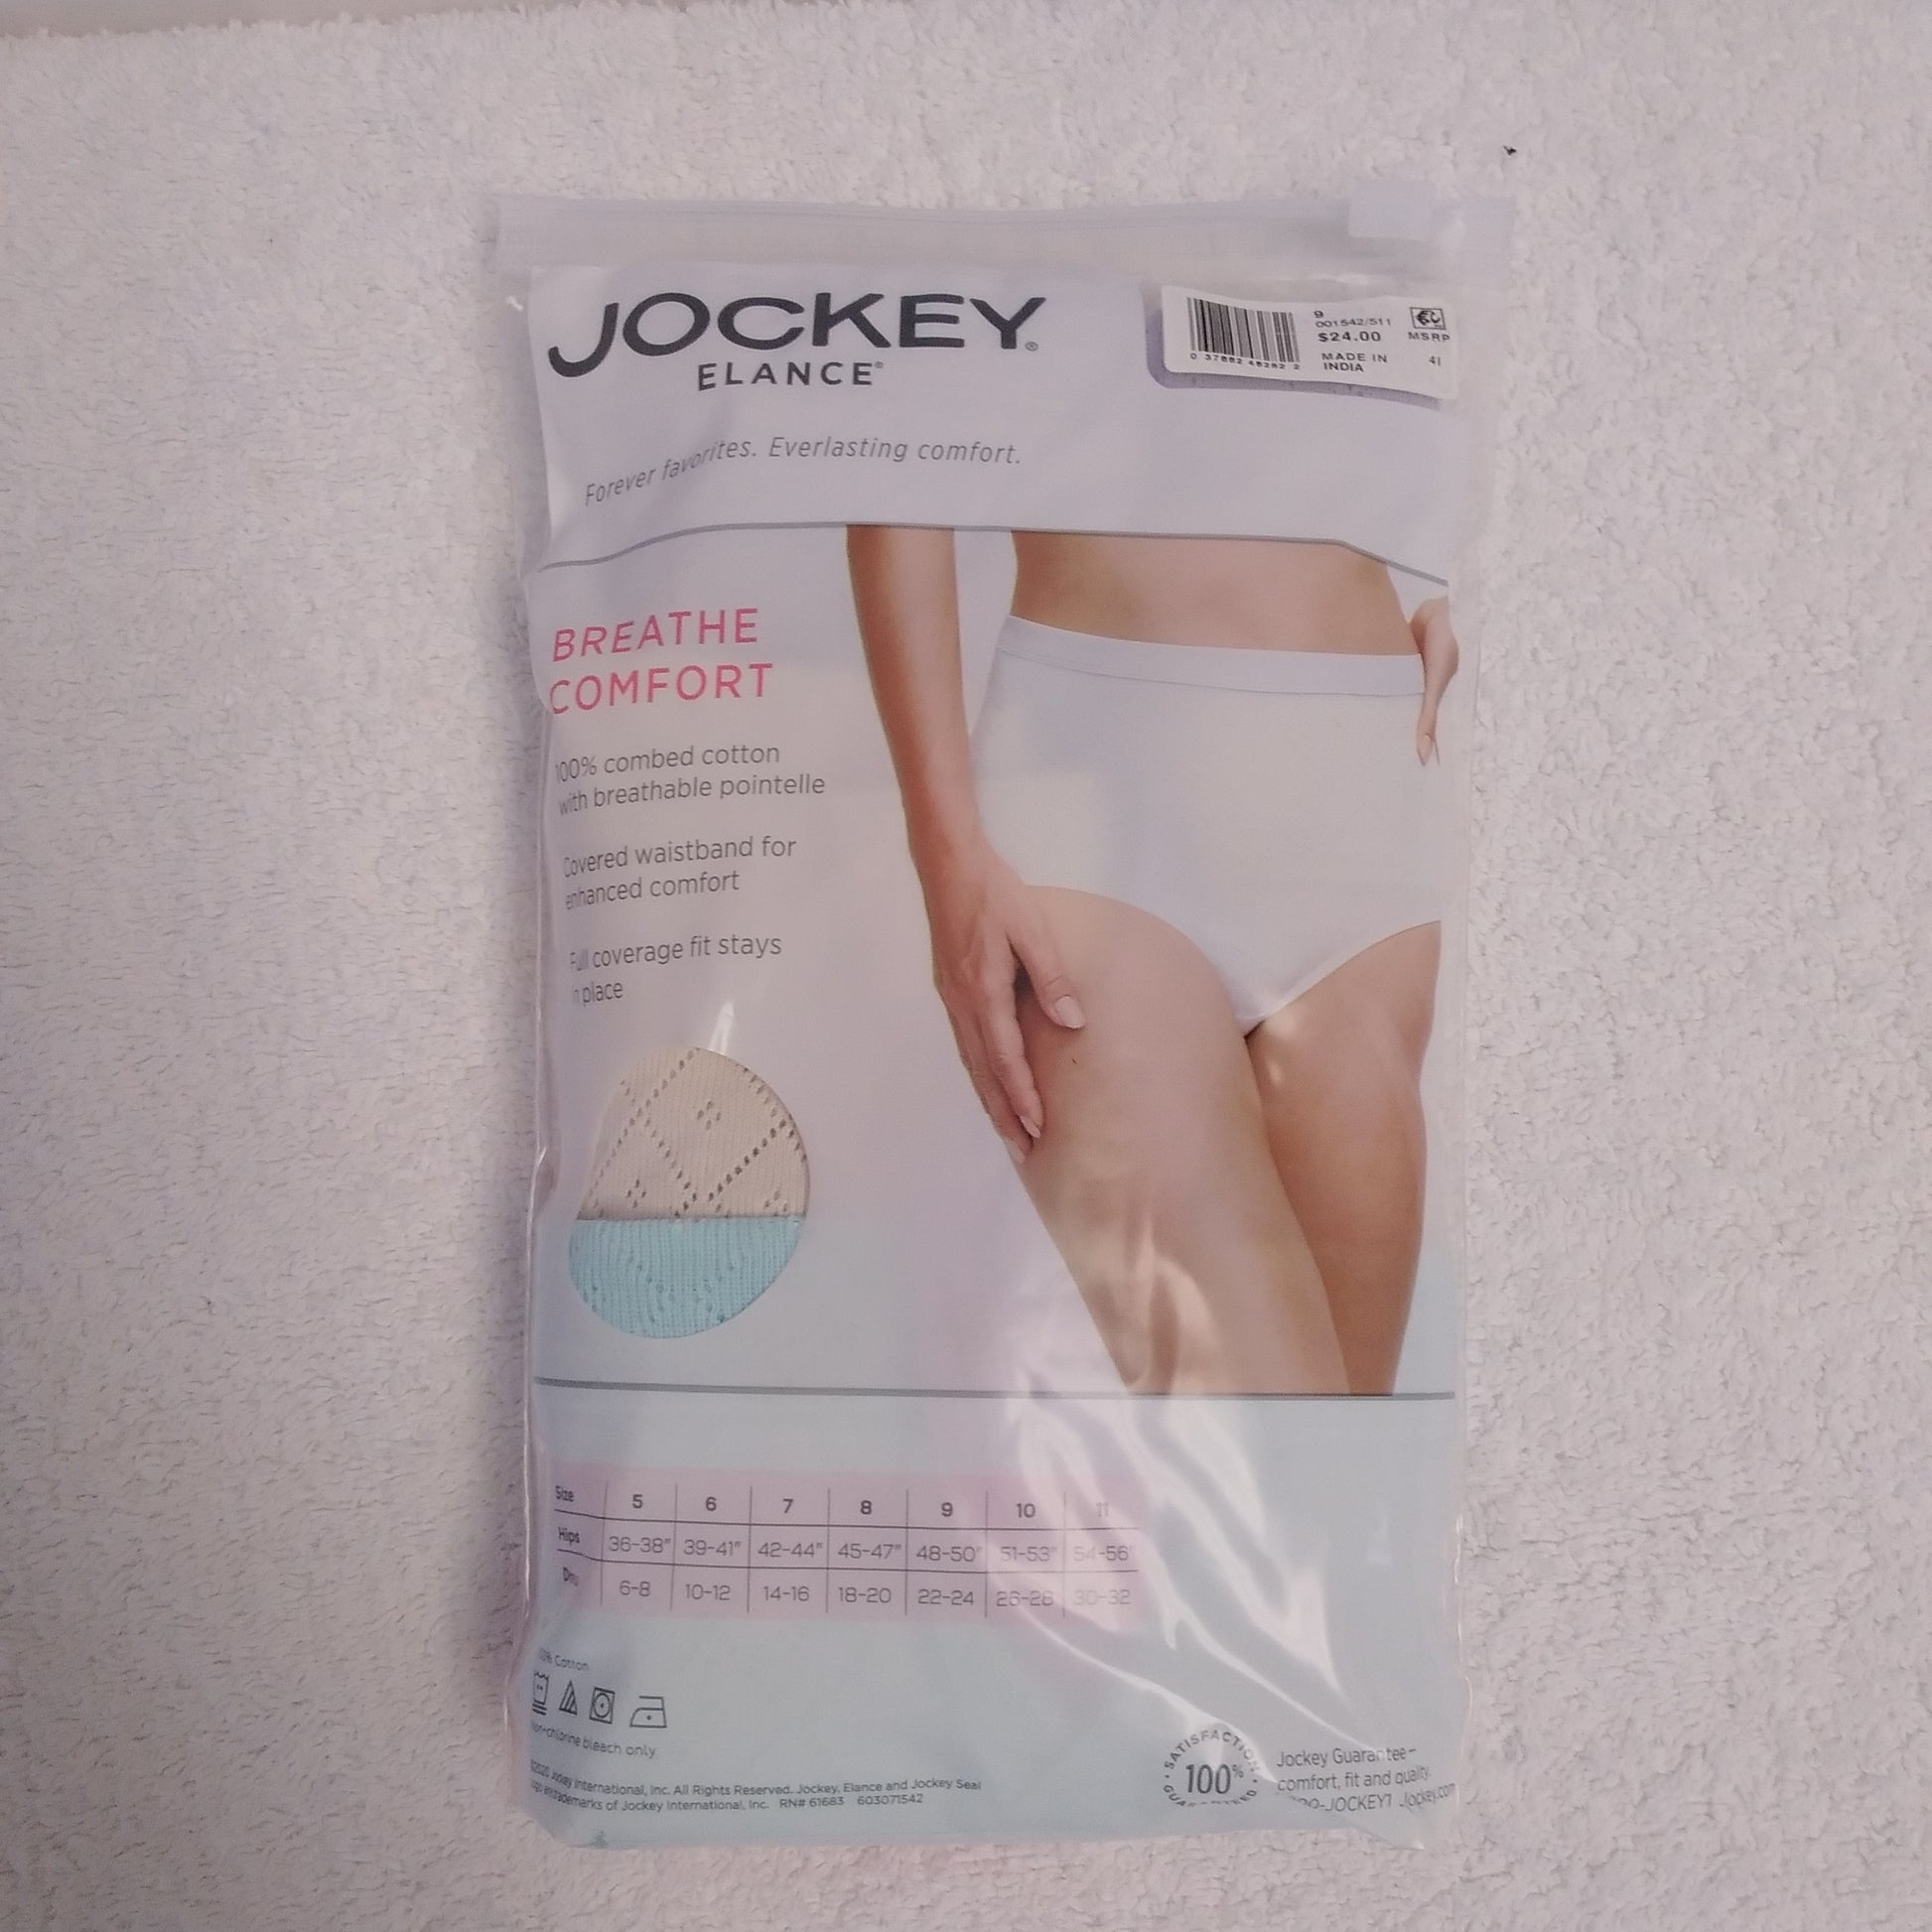 JOCKEY Underwear & Activewear Catalog Fall 2020 - WOMEN MEN - 48 Pages